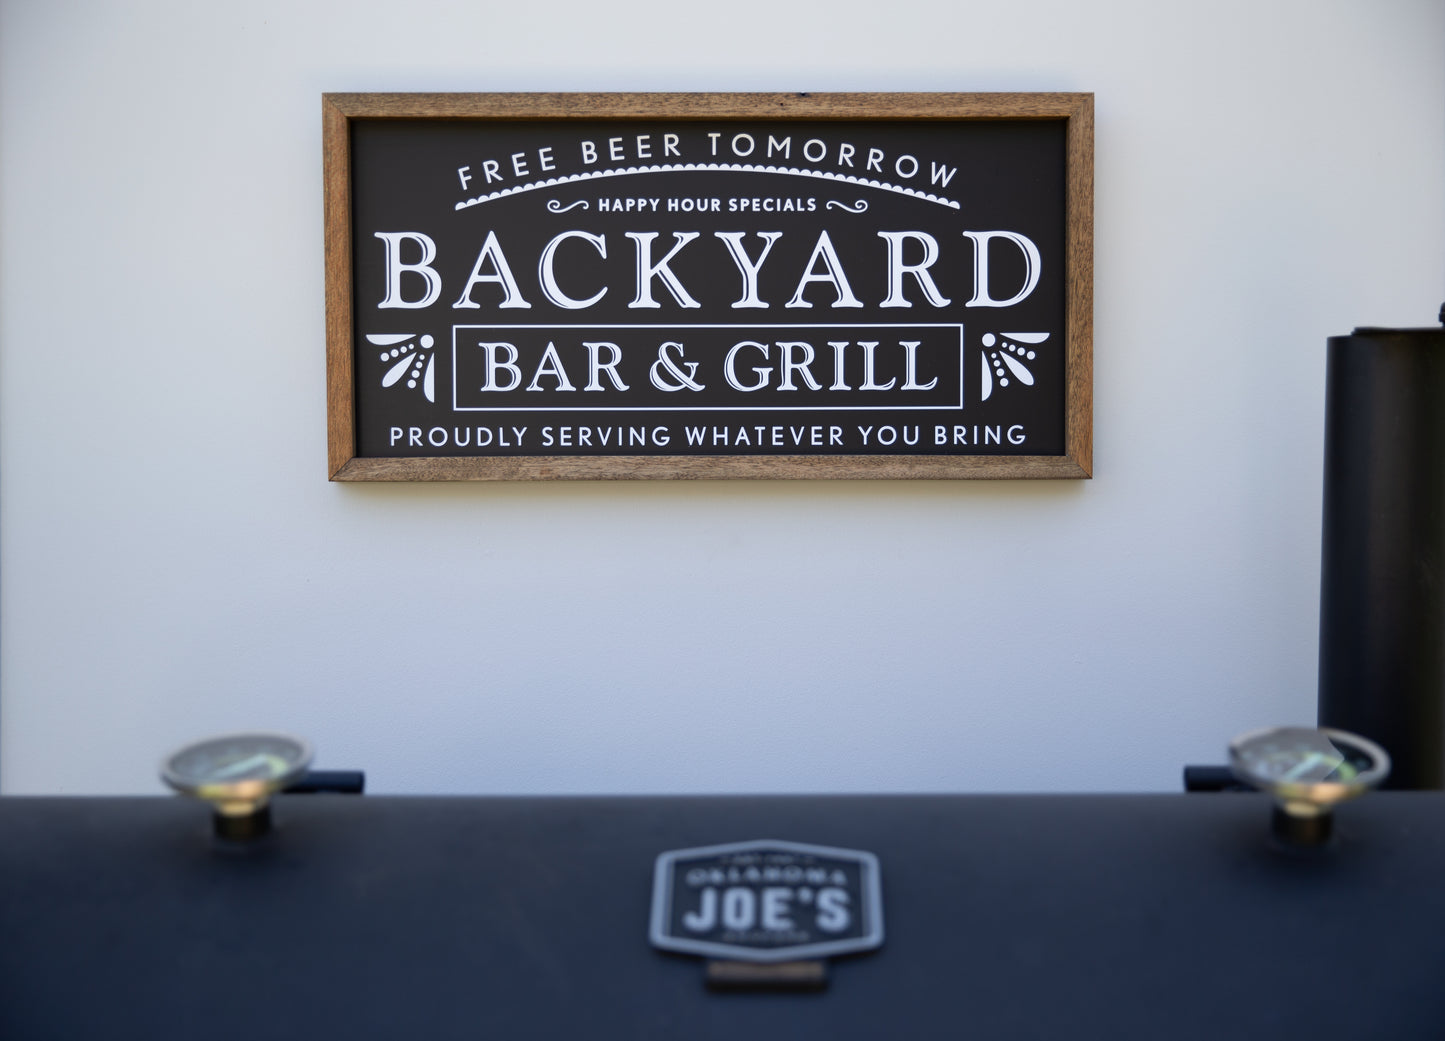 Backyard BBQ & Grill